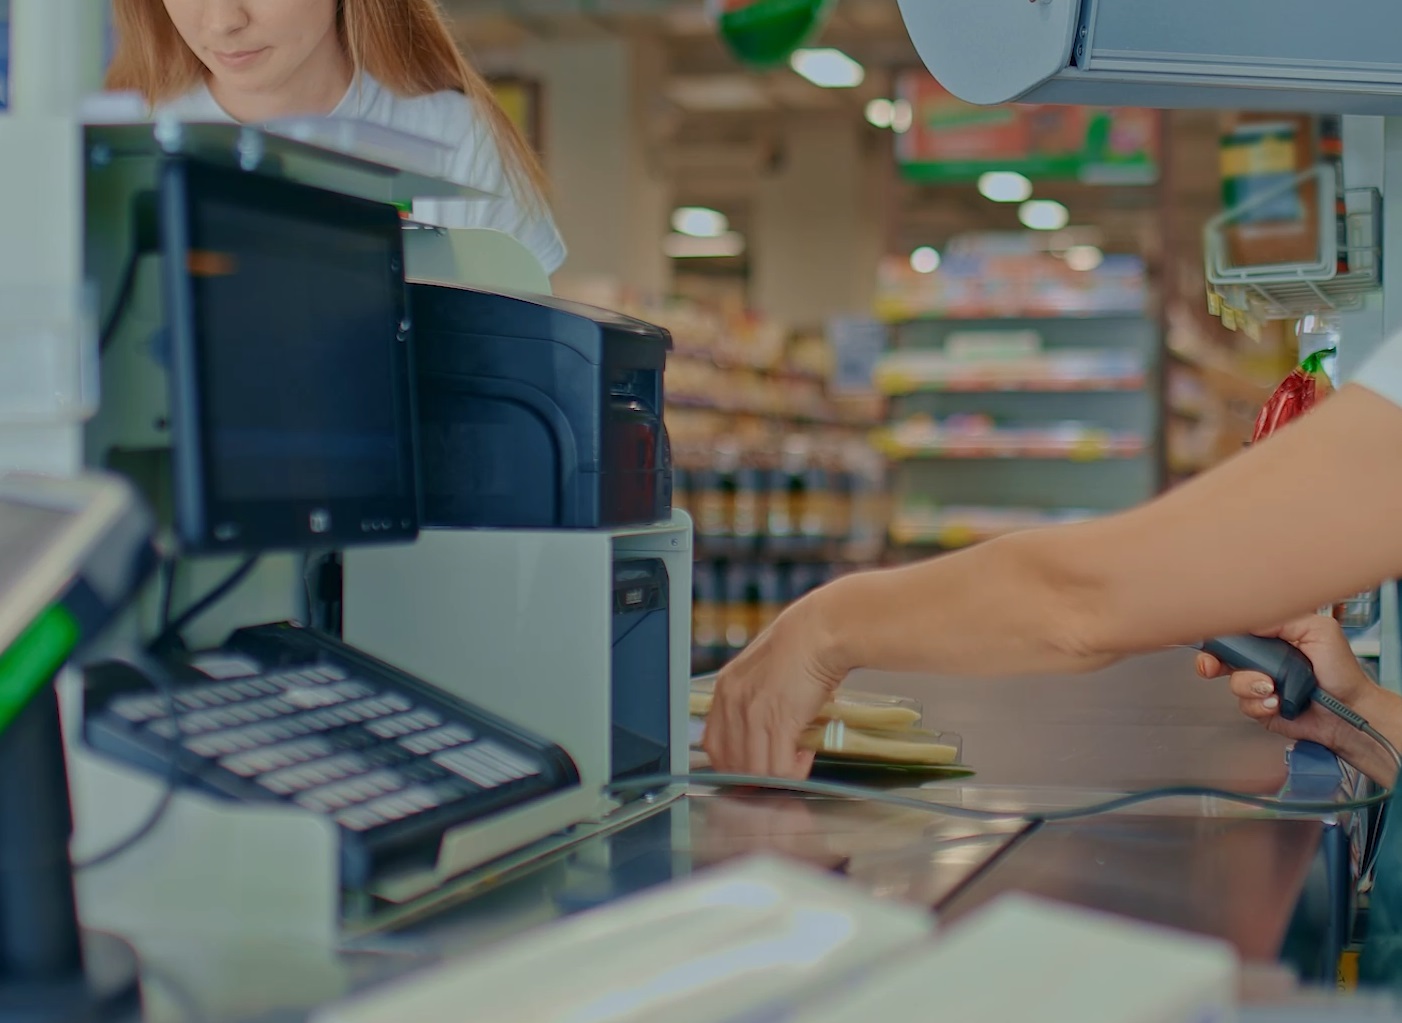 Leafa unui român angajat la un supermarket din SUA trece de 2.000 de dolari pe lună (Foto: captură video)